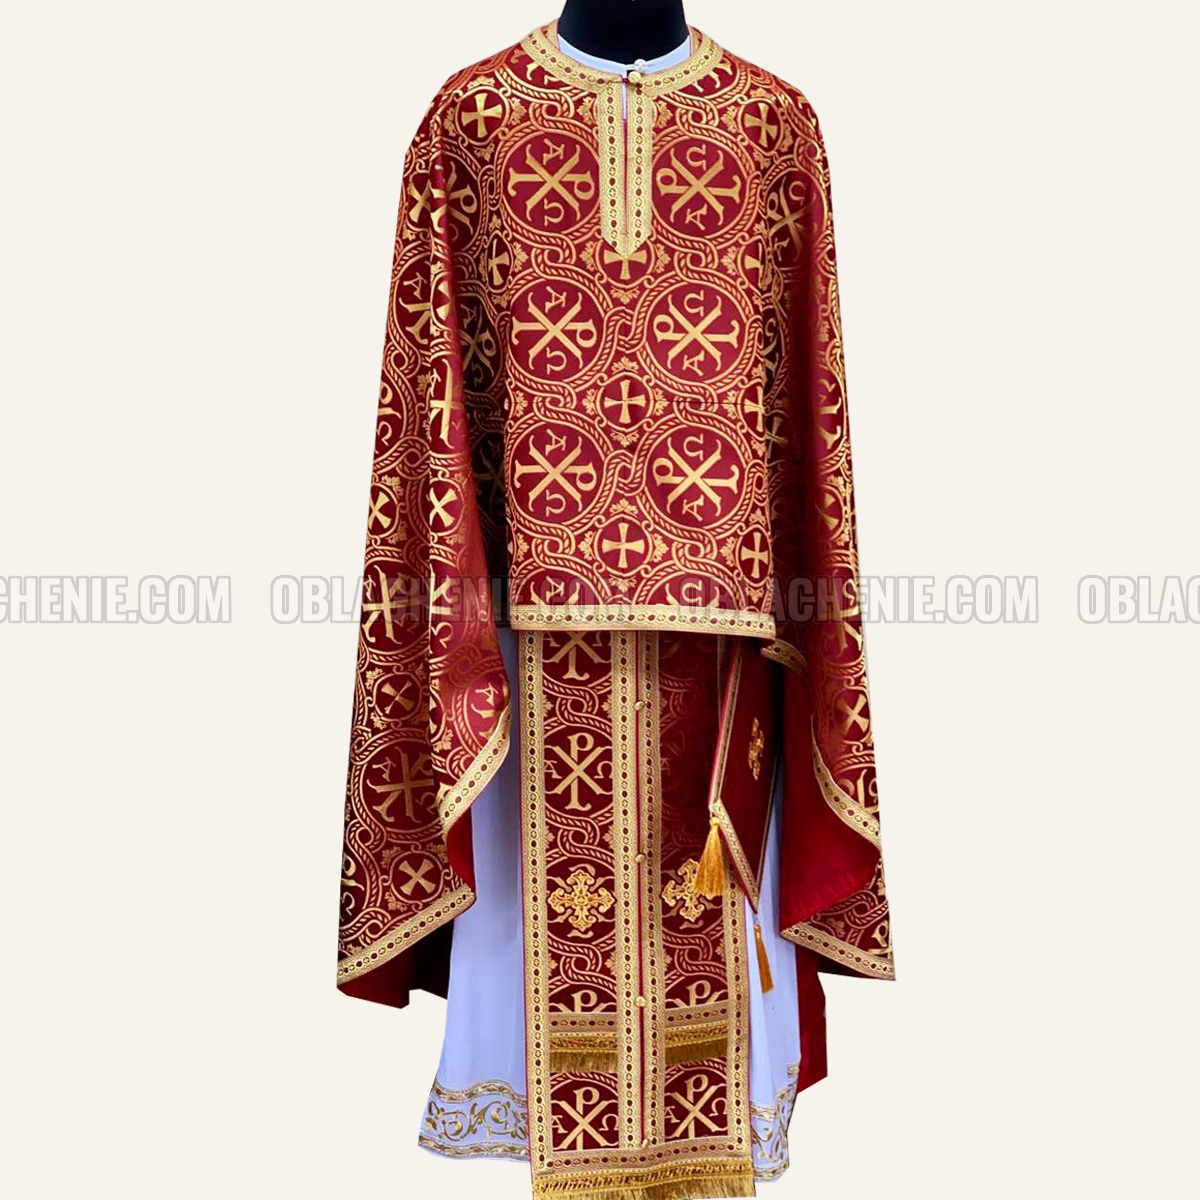 Priest's vestments 10139